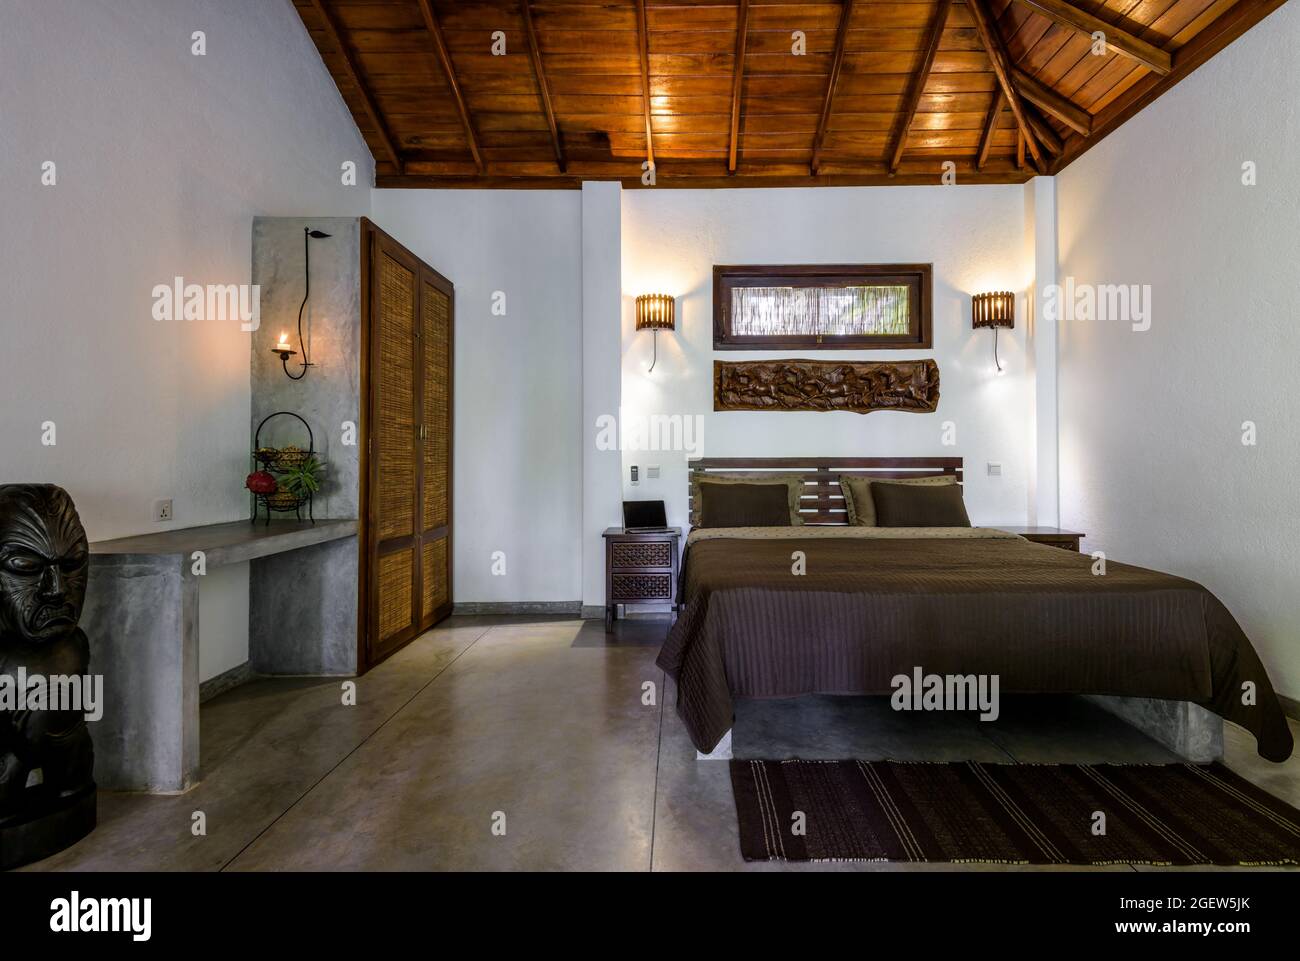 Tangalle, Sri Lanka – 31. Oktober 2017: Im Hotel- oder Wohnhaus, Zimmer mit Bett, Holzmöbeln und Decke. Schlafzimmer Haus Interieur in Indian mi Stockfoto